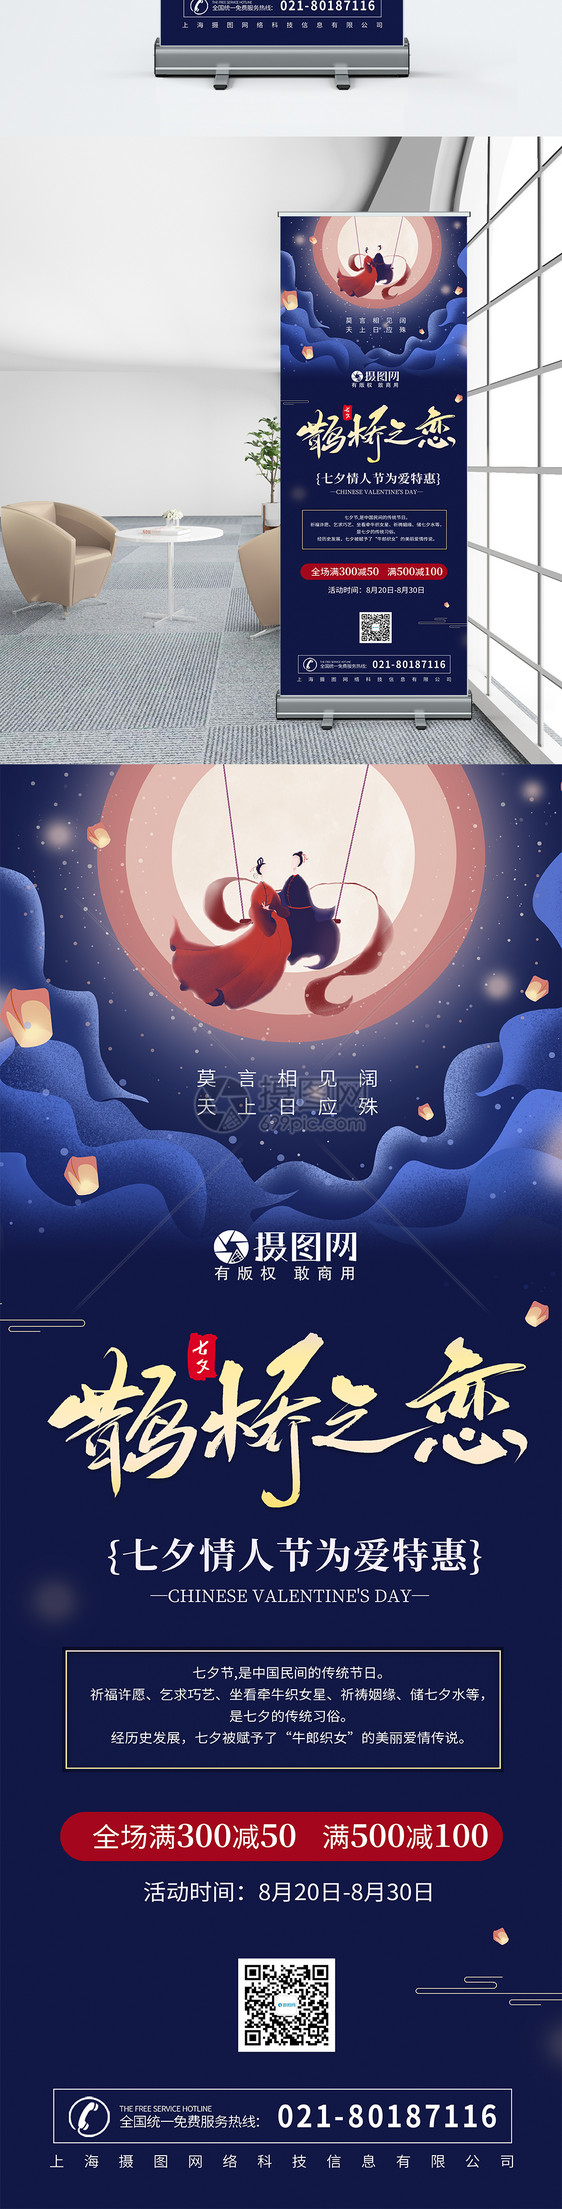 七夕情人节传统节日促销展架图片